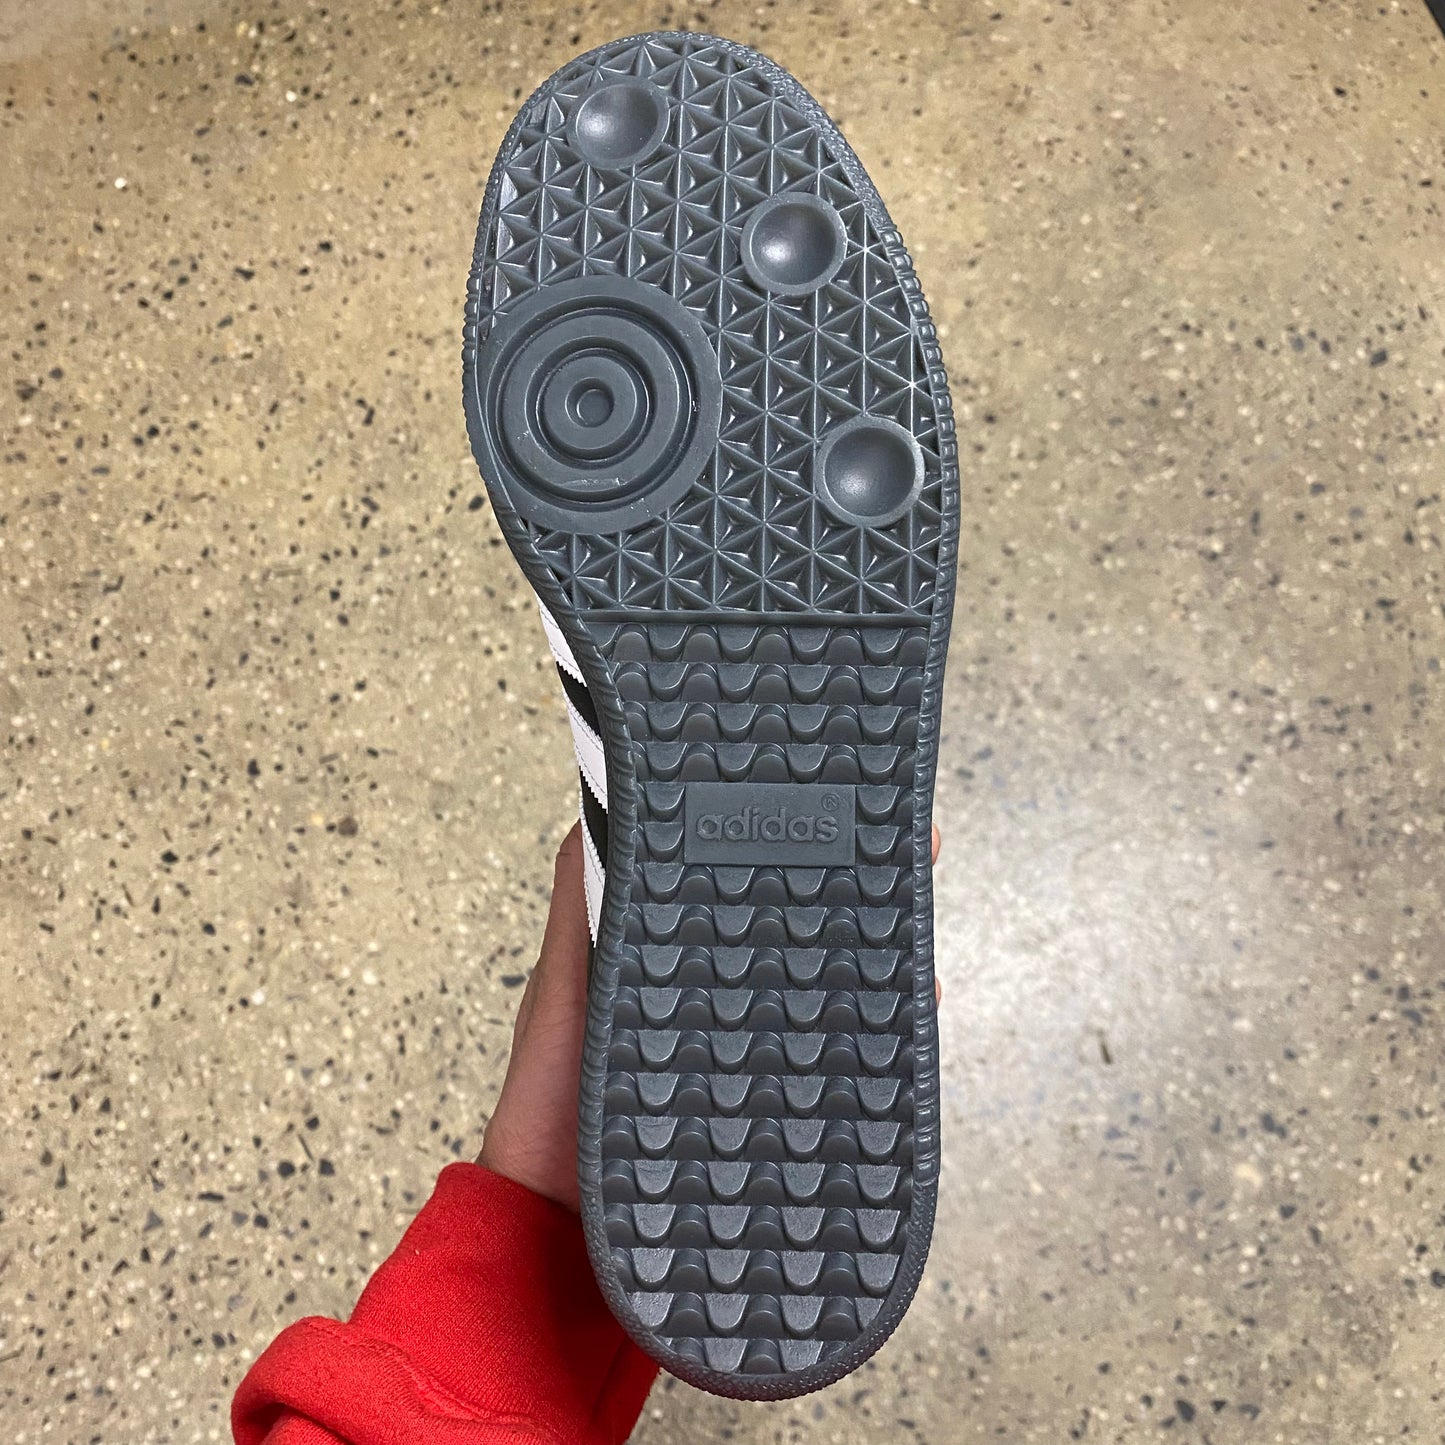 black sole, bottom of sneaker